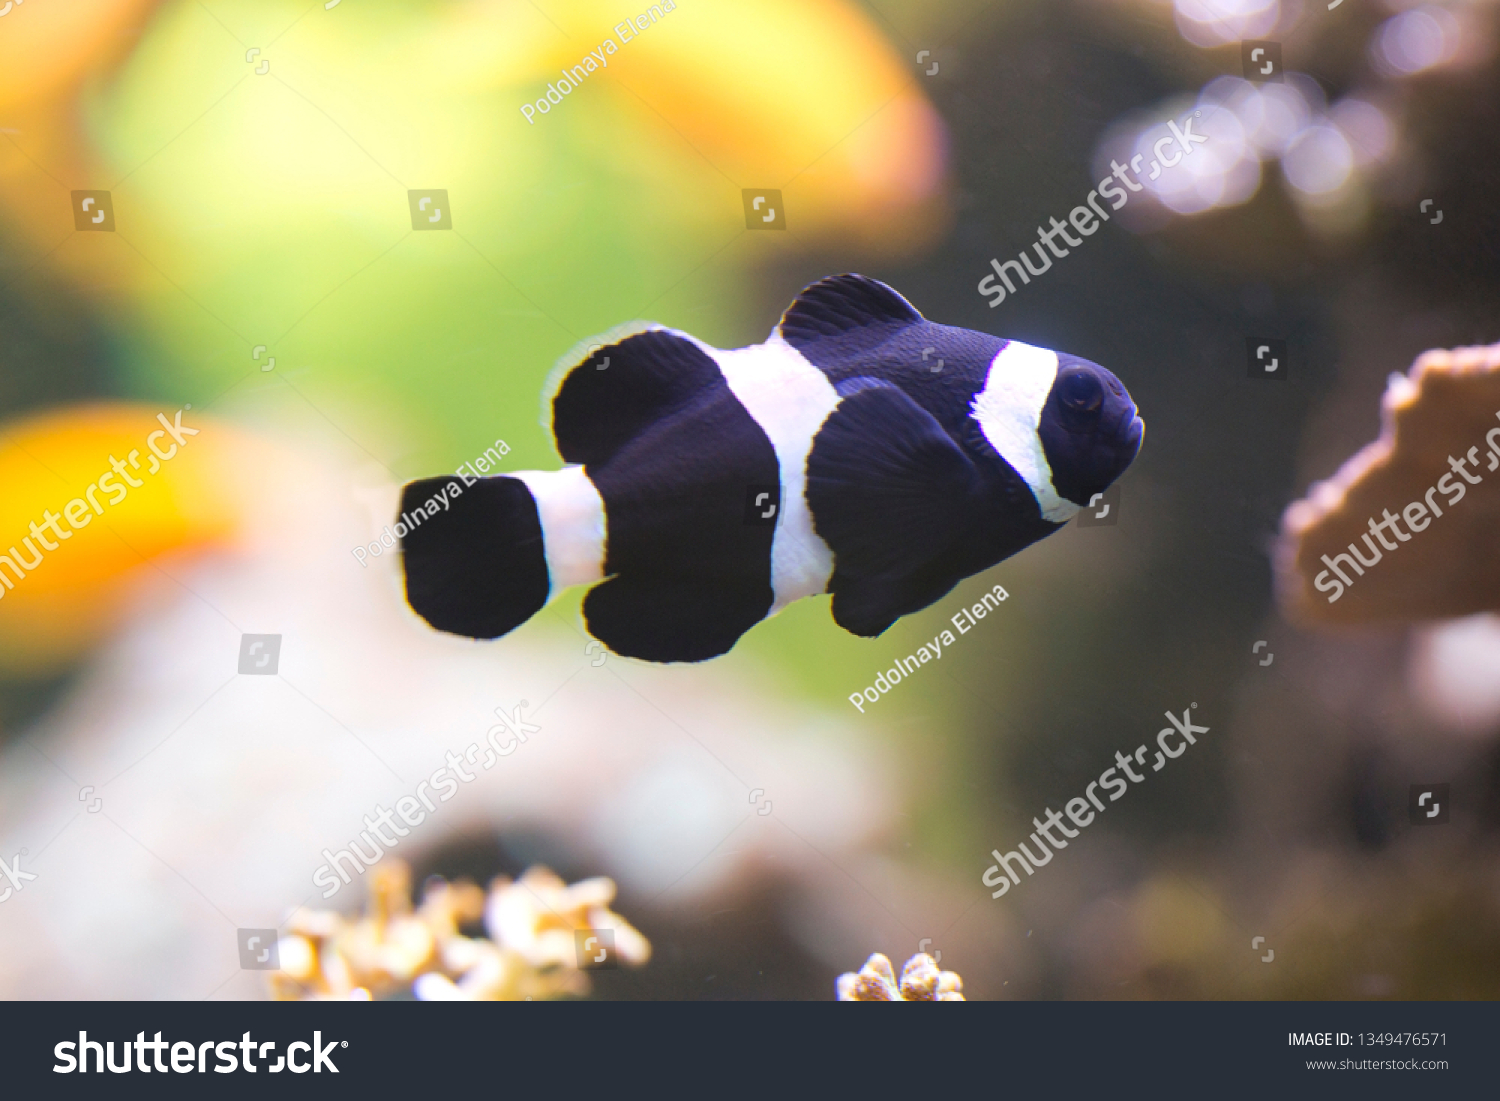  Ocellaris clownfish, false percula clownfish,  common clownfish (Amphiprion ocellaris). #1349476571